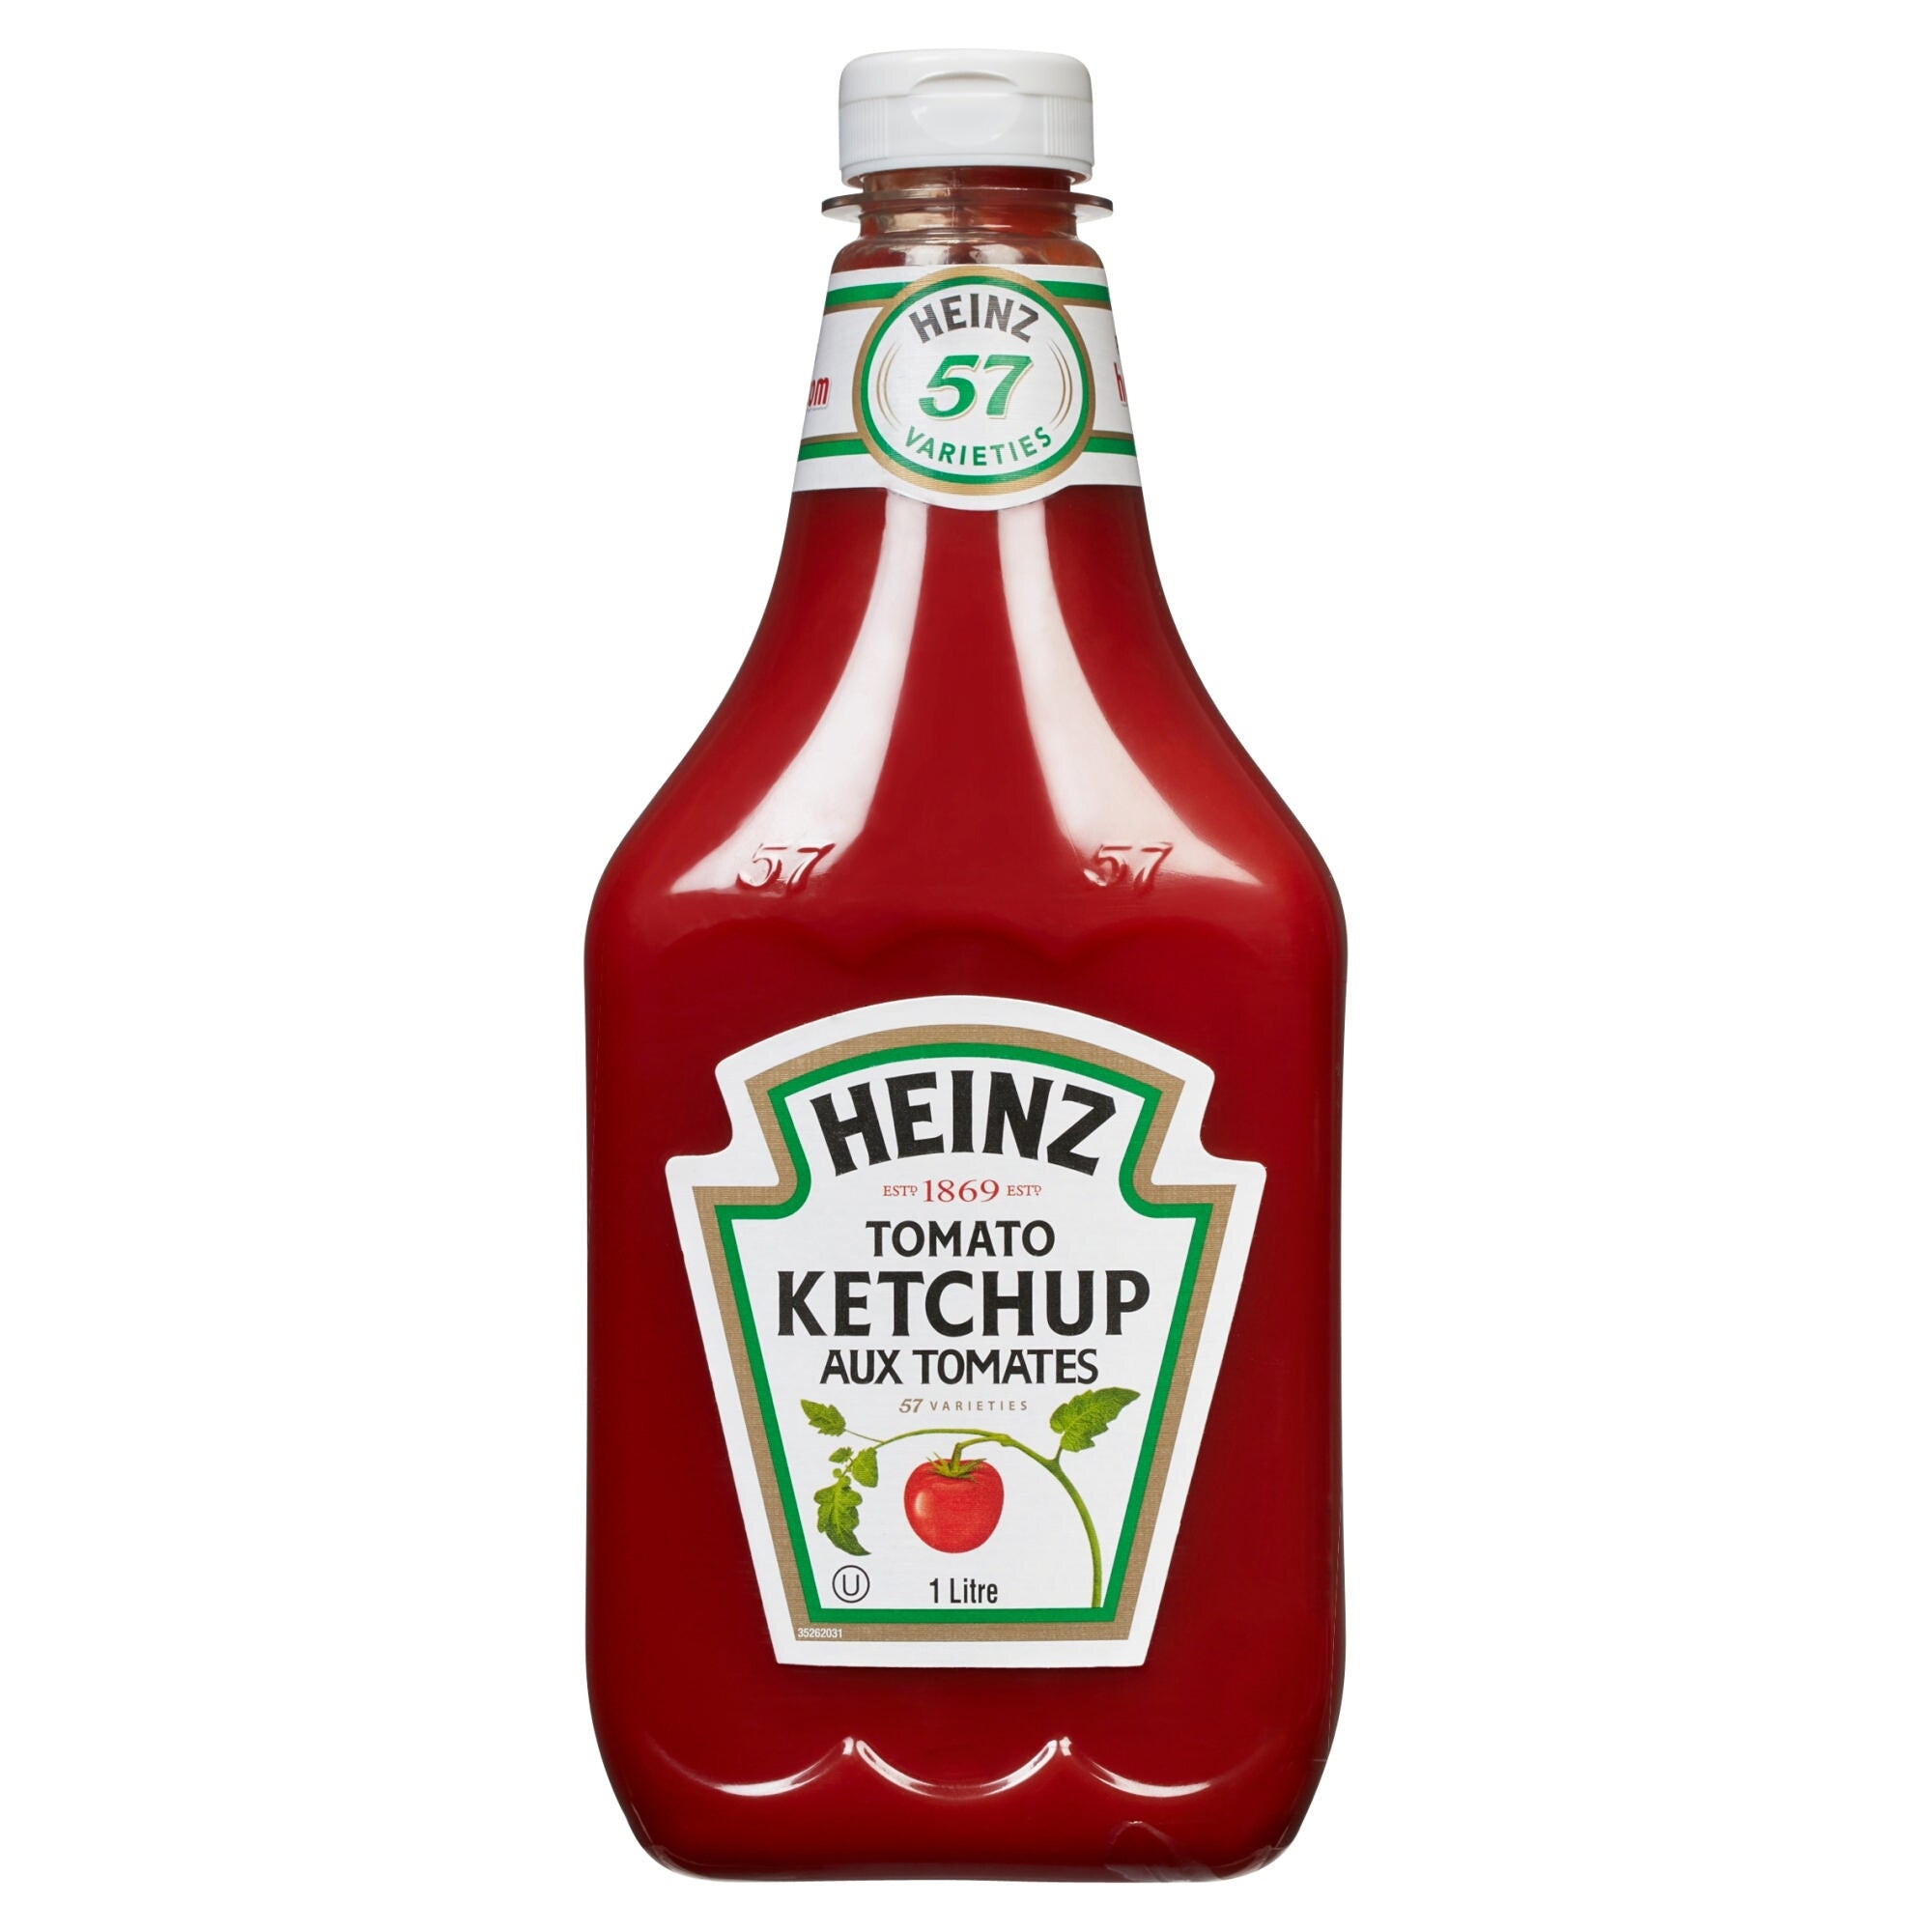 4.97$ était 5.77$, Ketchup aux tomates – 1 L